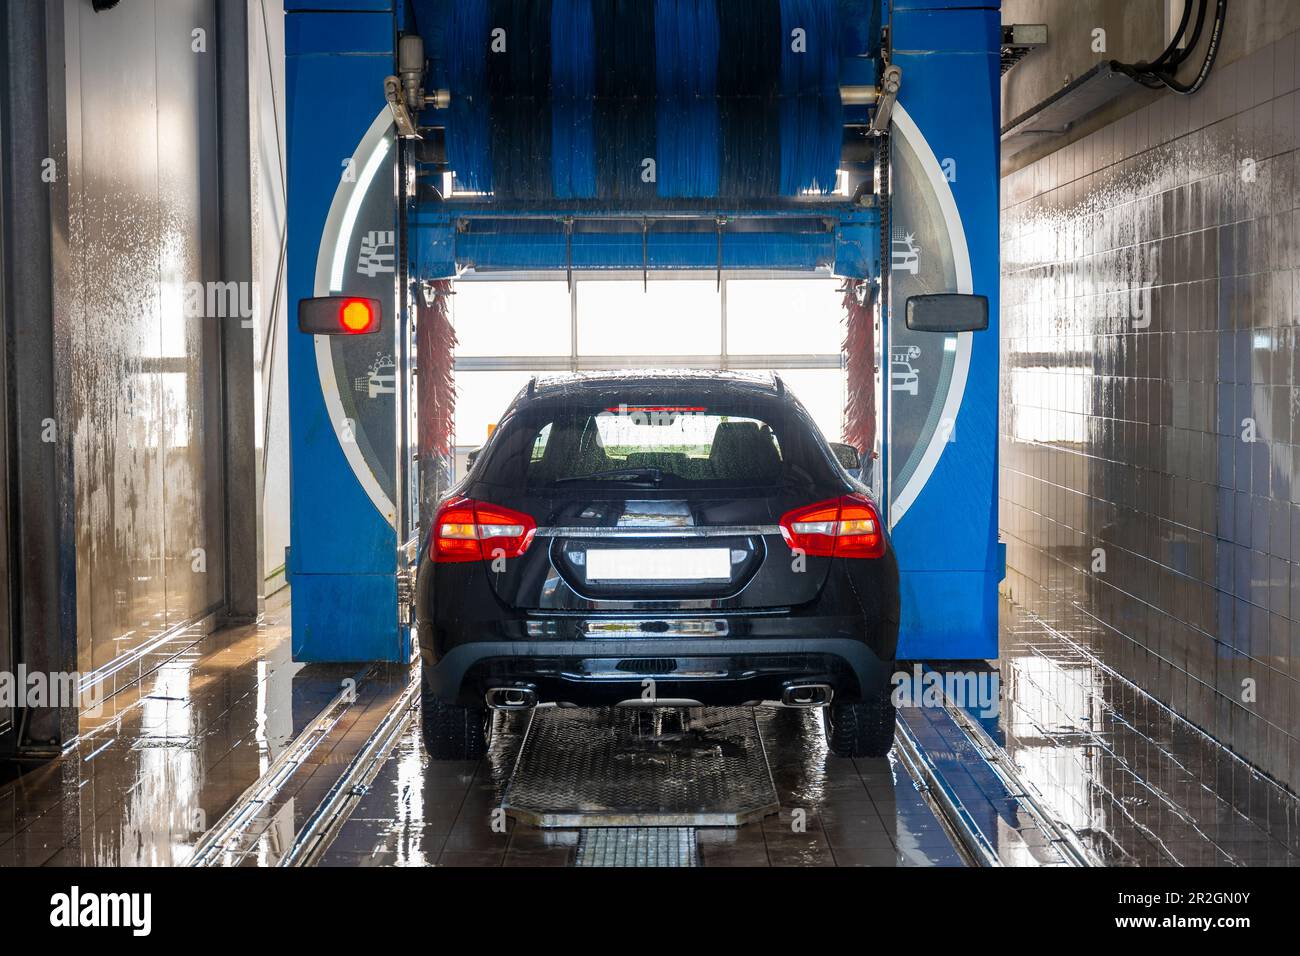 Auto in Auto-Waschanlage an einem sonnigen Tag in der Schweiz  Stockfotografie - Alamy